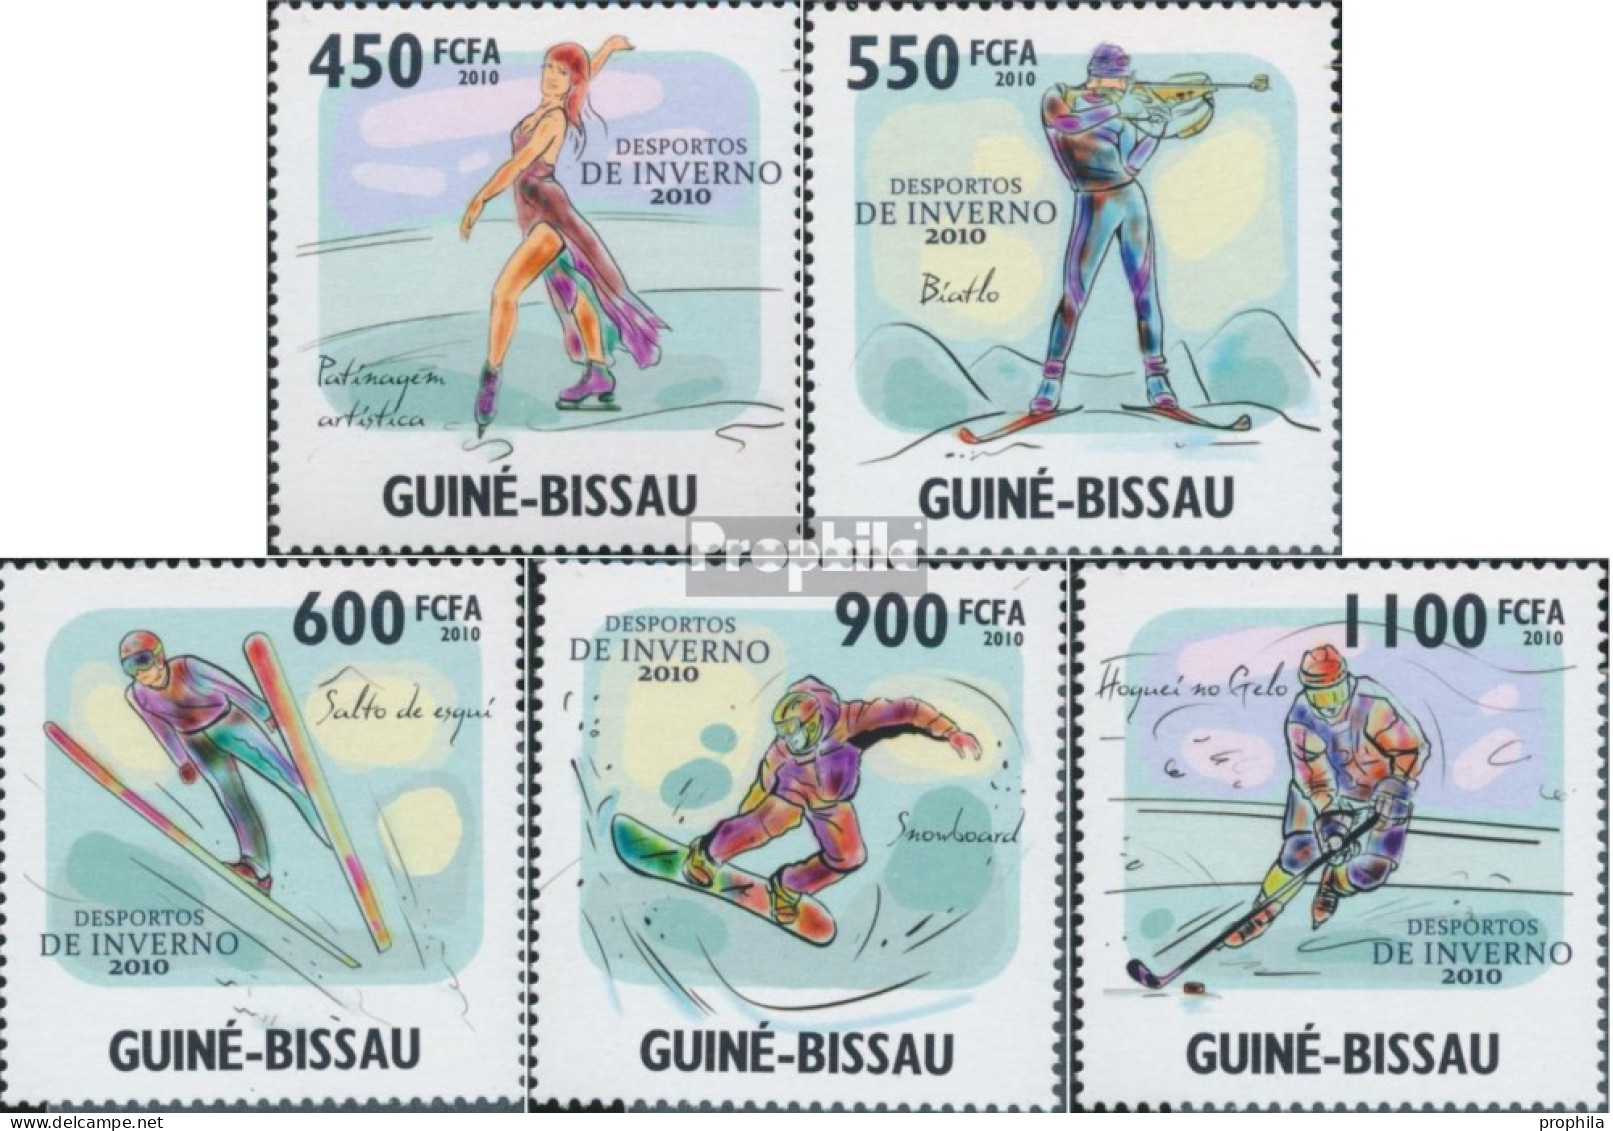 Guinea-Bissau 4581-4585 (kompl. Ausgabe) Postfrisch 2010 Wintersport - Guinea-Bissau